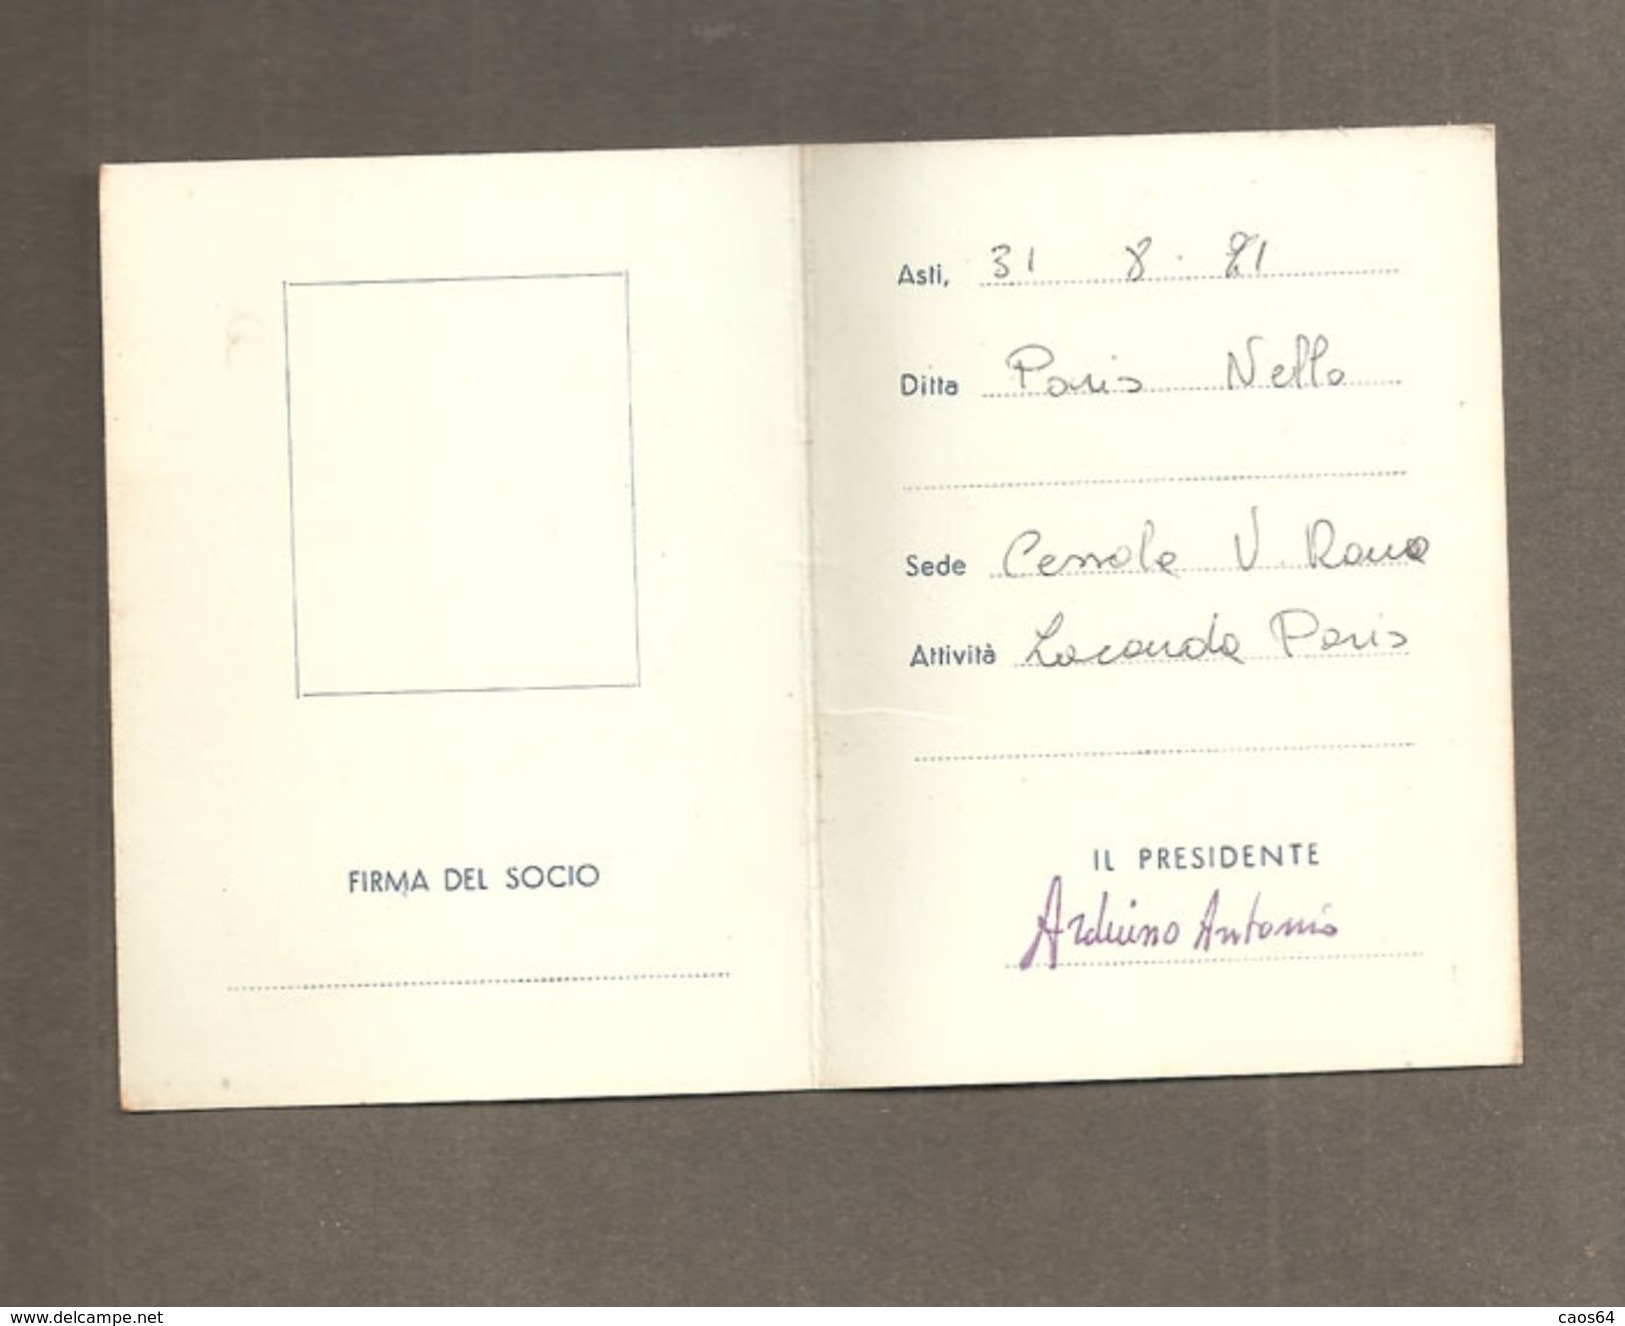 TESSERA UNIONE COMMERCIANTI DELLA PROVINCIA DI ASTI - 1971 - Cartes De Membre